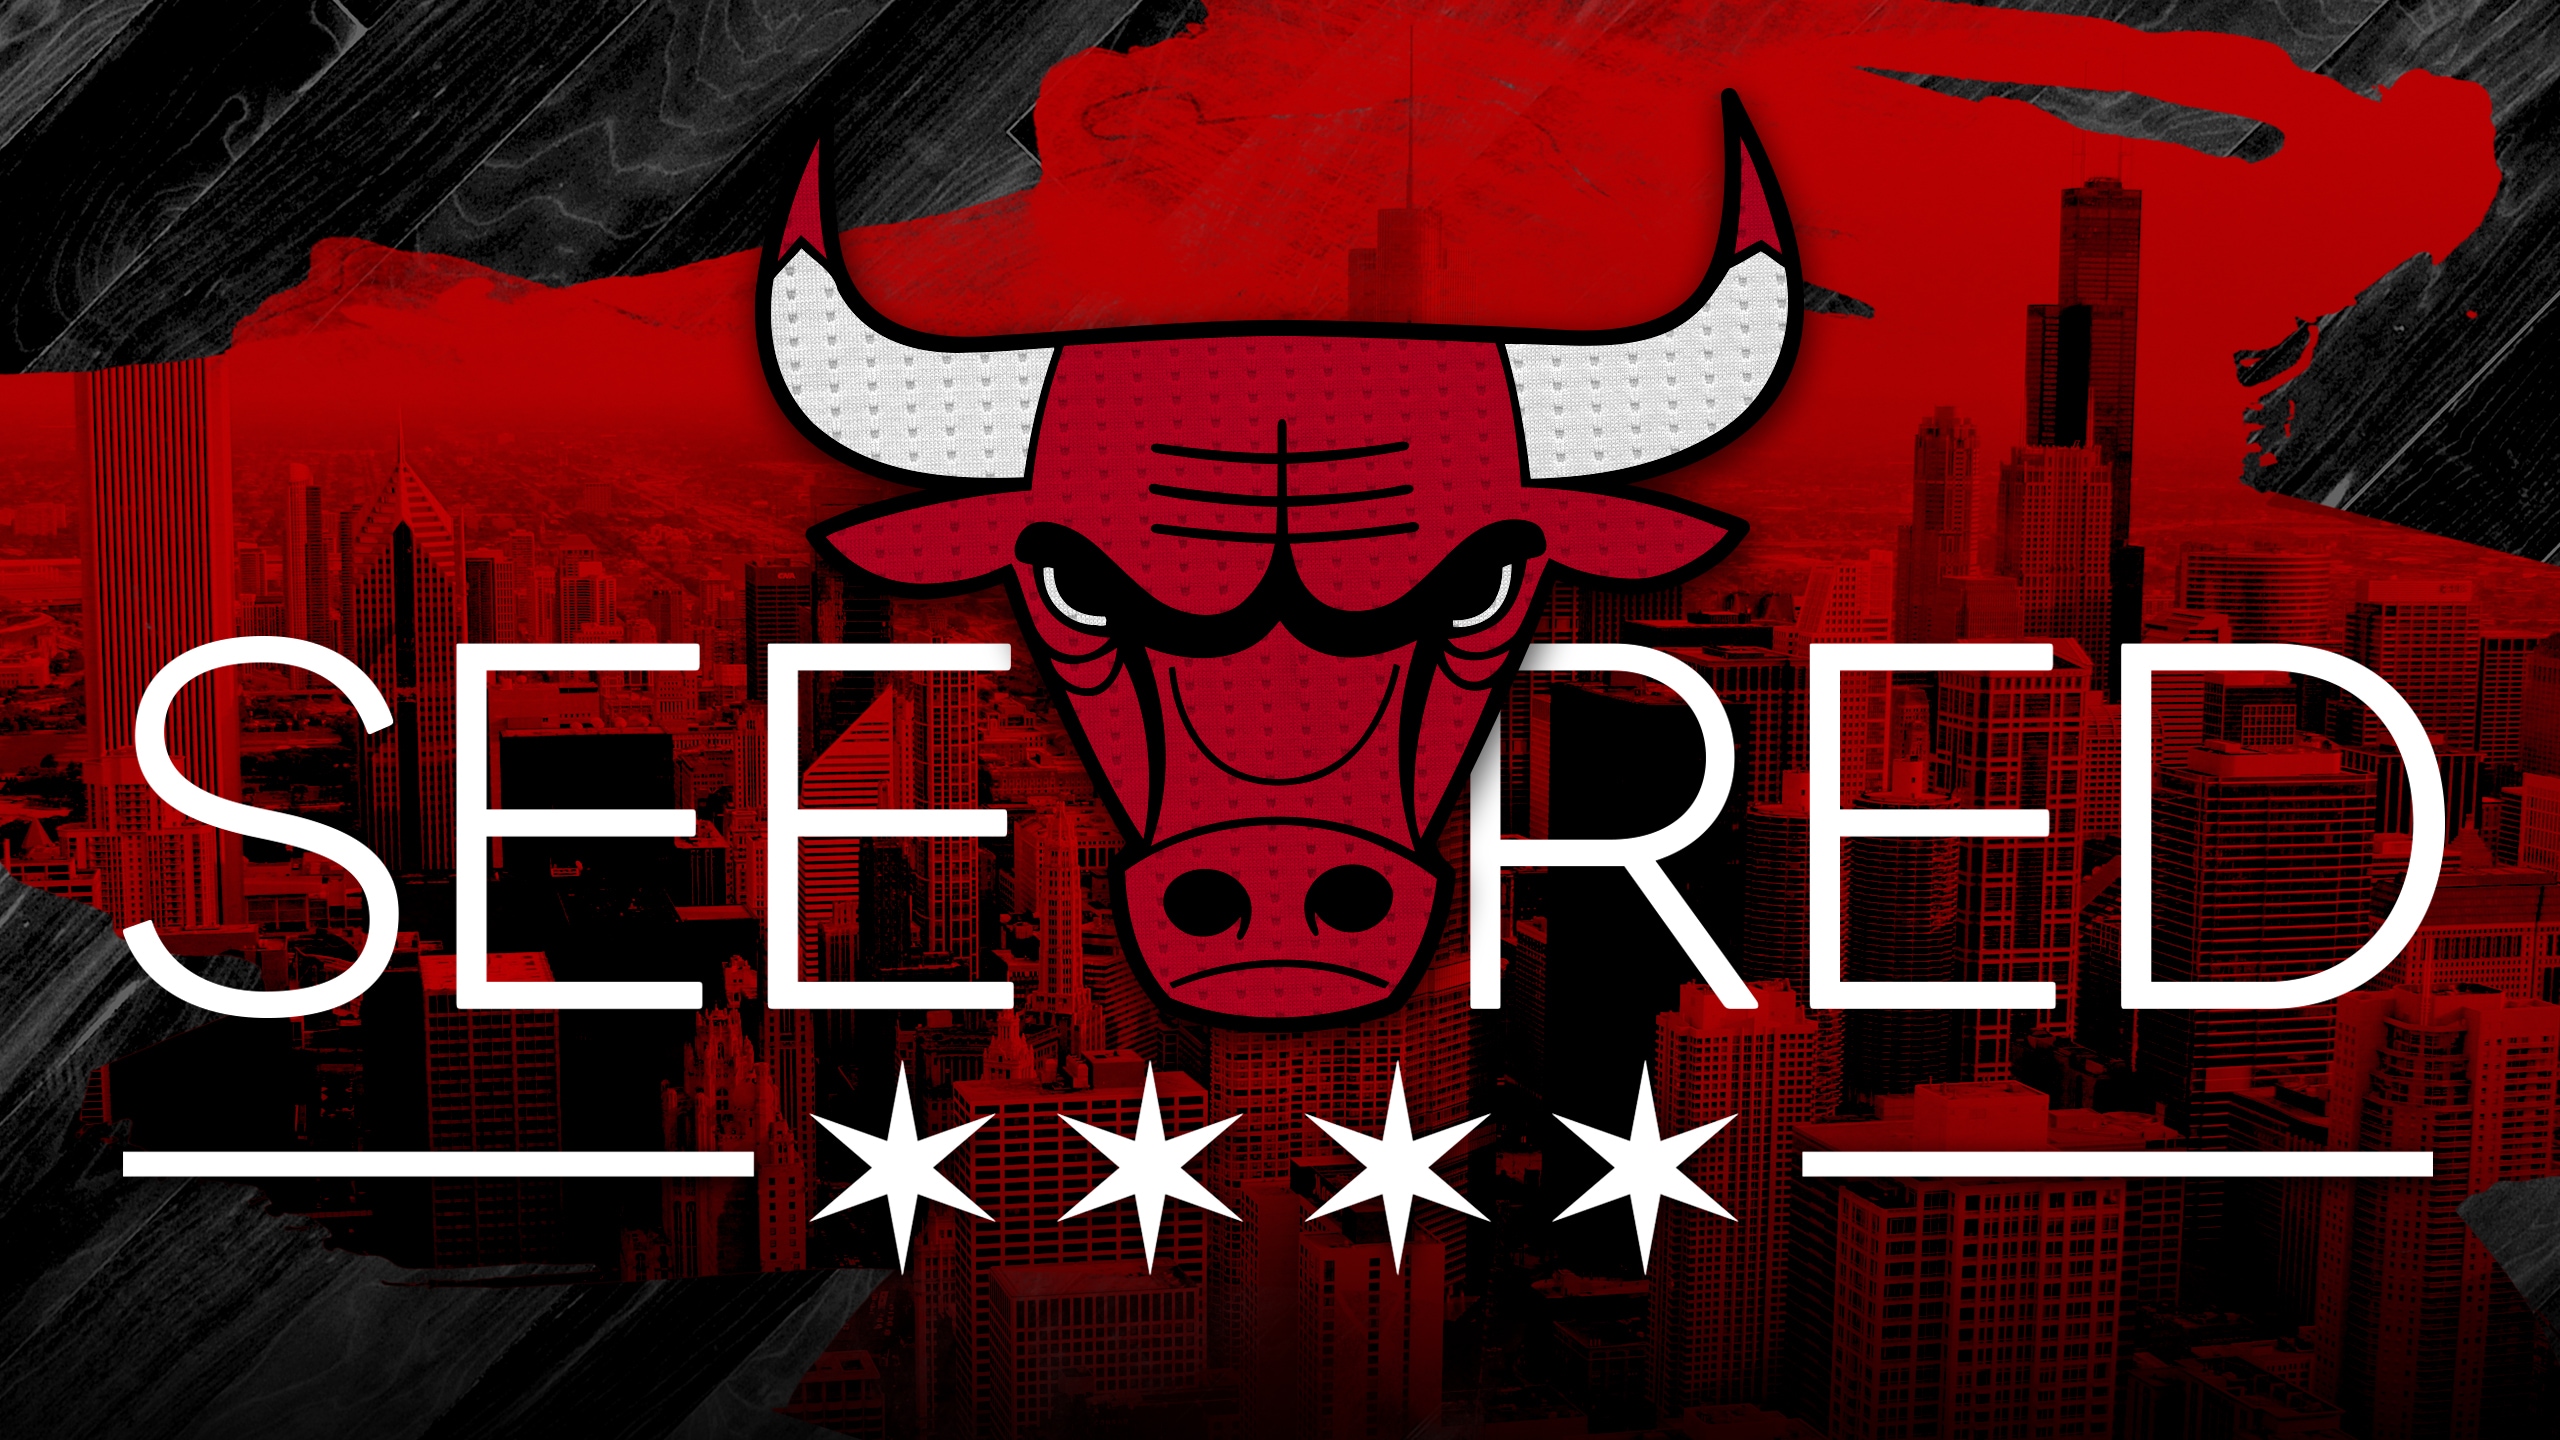 bulls wallpaper,red,bull,bovine,font,logo